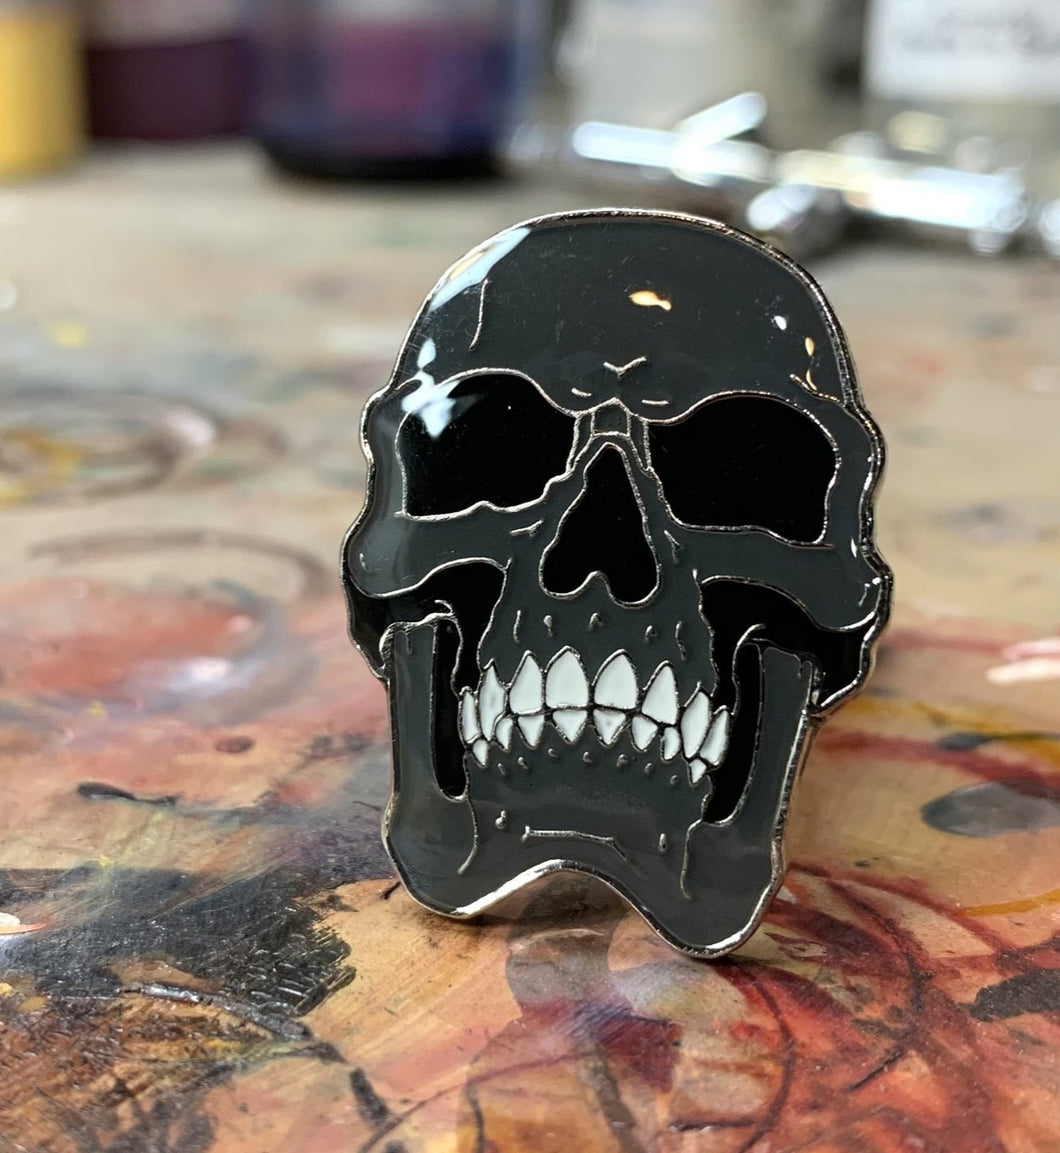 LE 55 “Ash” mini skull pin